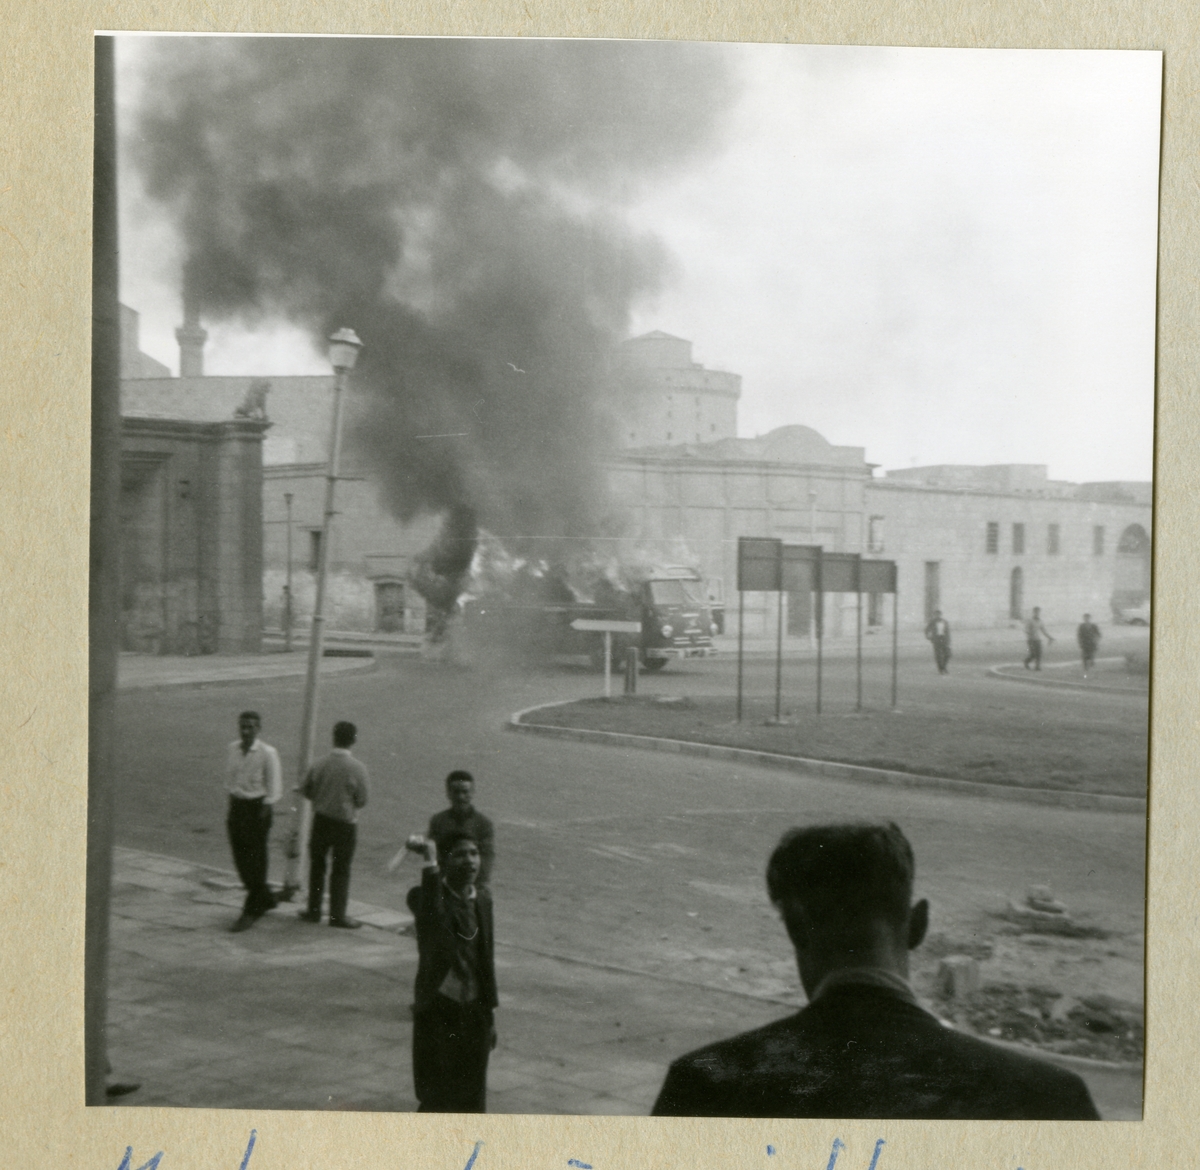 Bilden föreställer en buss, vilken det kommer kraftig rök ifrån. På bilden syns även byggader och människor i omgivningen. Bilden är tagen i samband med minfartyget Älvsnabbens långresa 1966-1967.